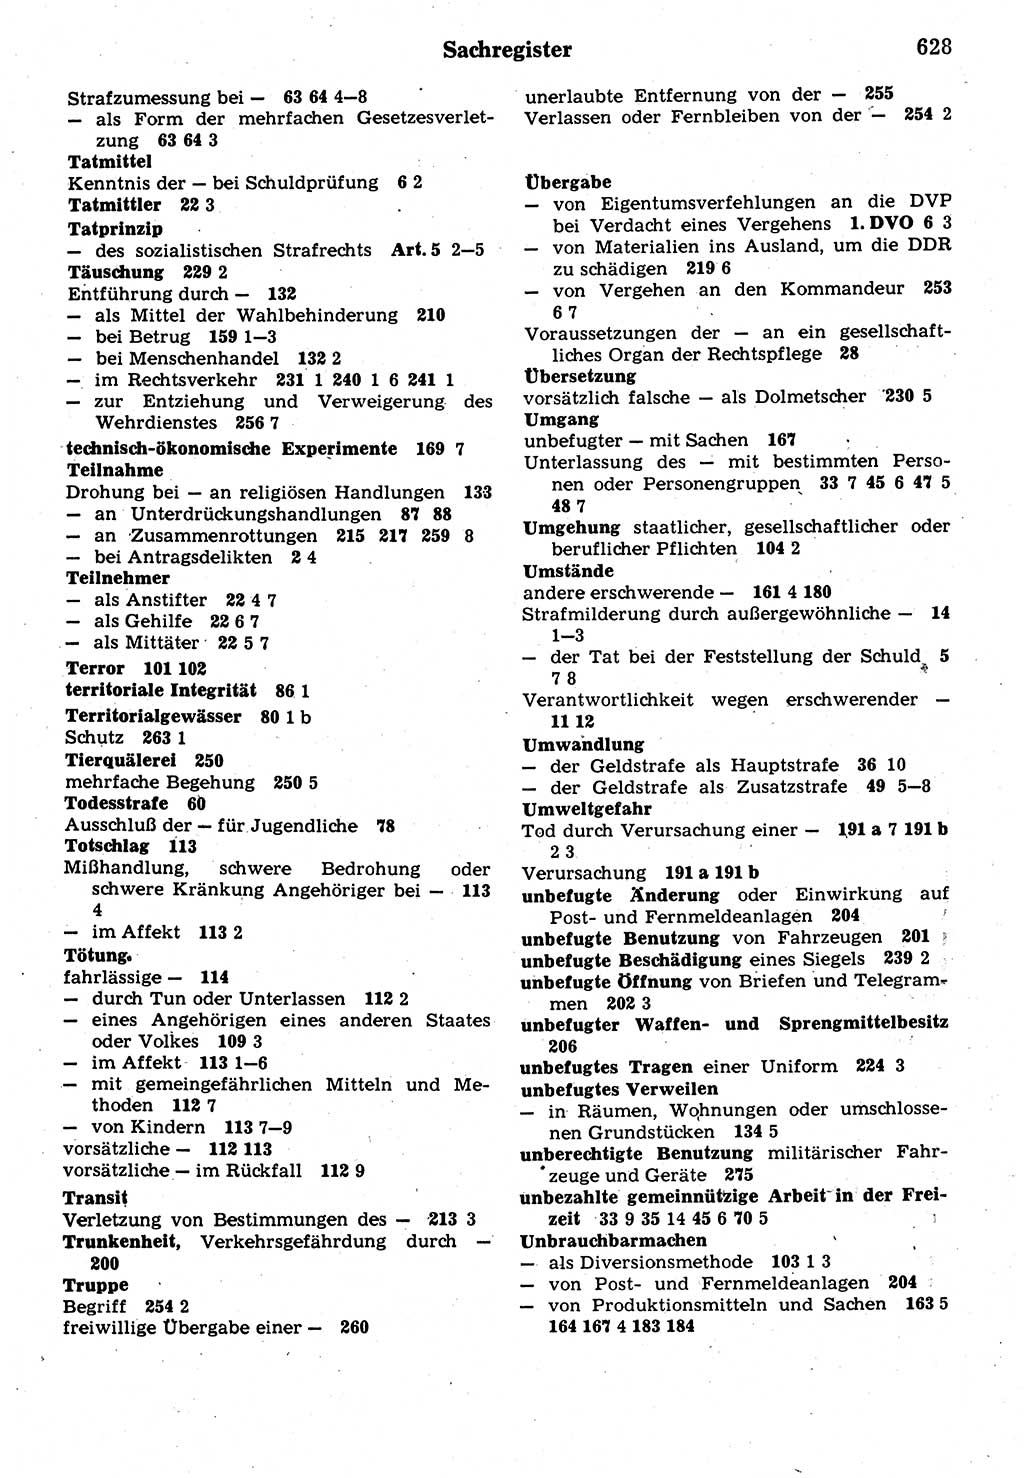 Strafrecht der Deutschen Demokratischen Republik (DDR), Kommentar zum Strafgesetzbuch (StGB) 1987, Seite 628 (Strafr. DDR Komm. StGB 1987, S. 628)